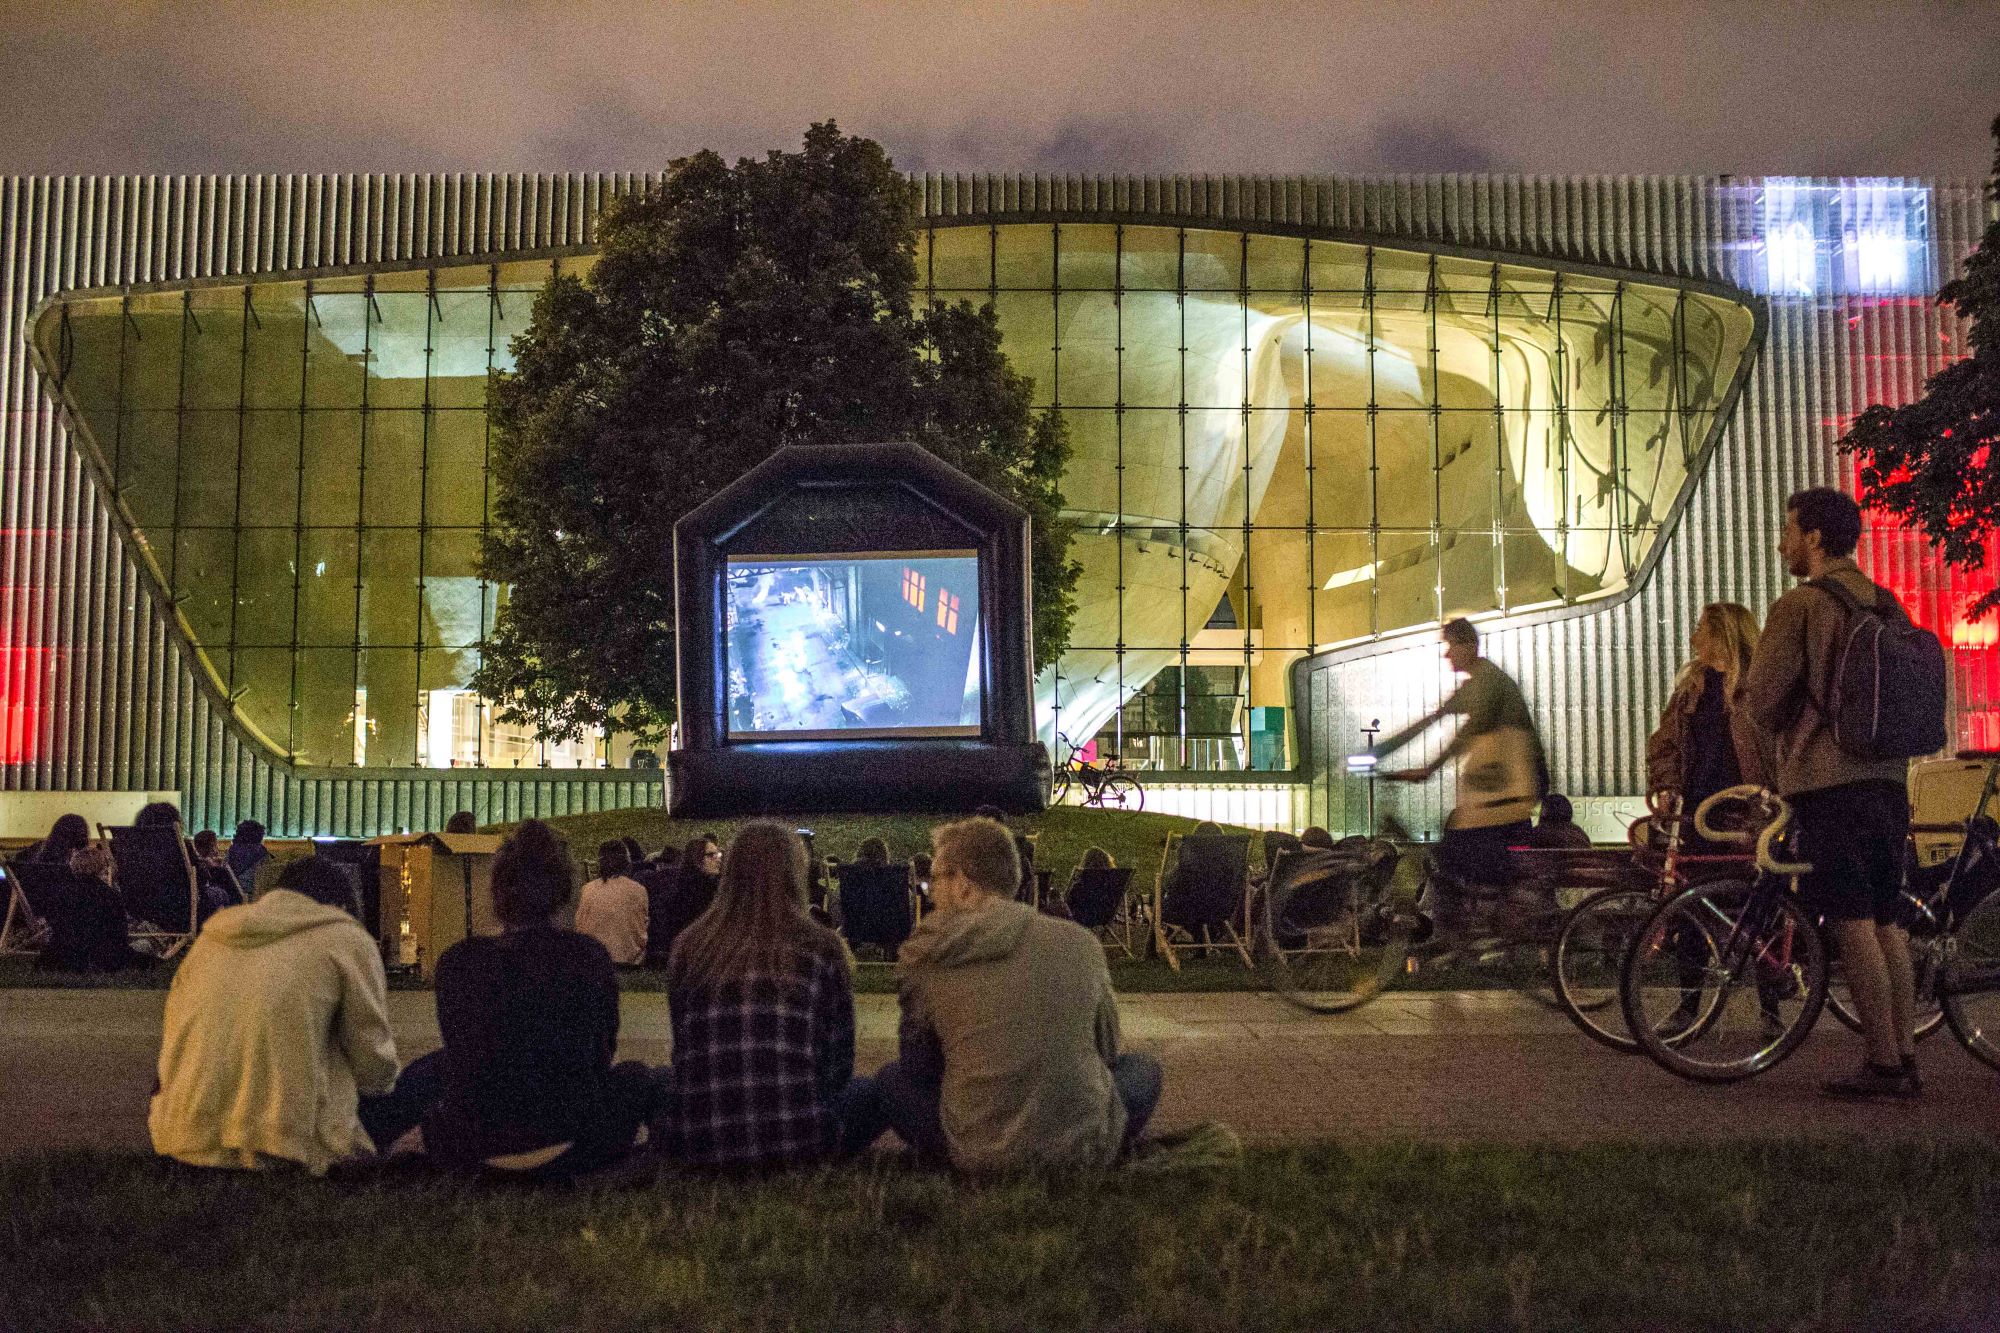 Widzowie siedzą na trawie i oglądają film wyświetlany na ekranie podczas pokazu kina letniego POLIN.